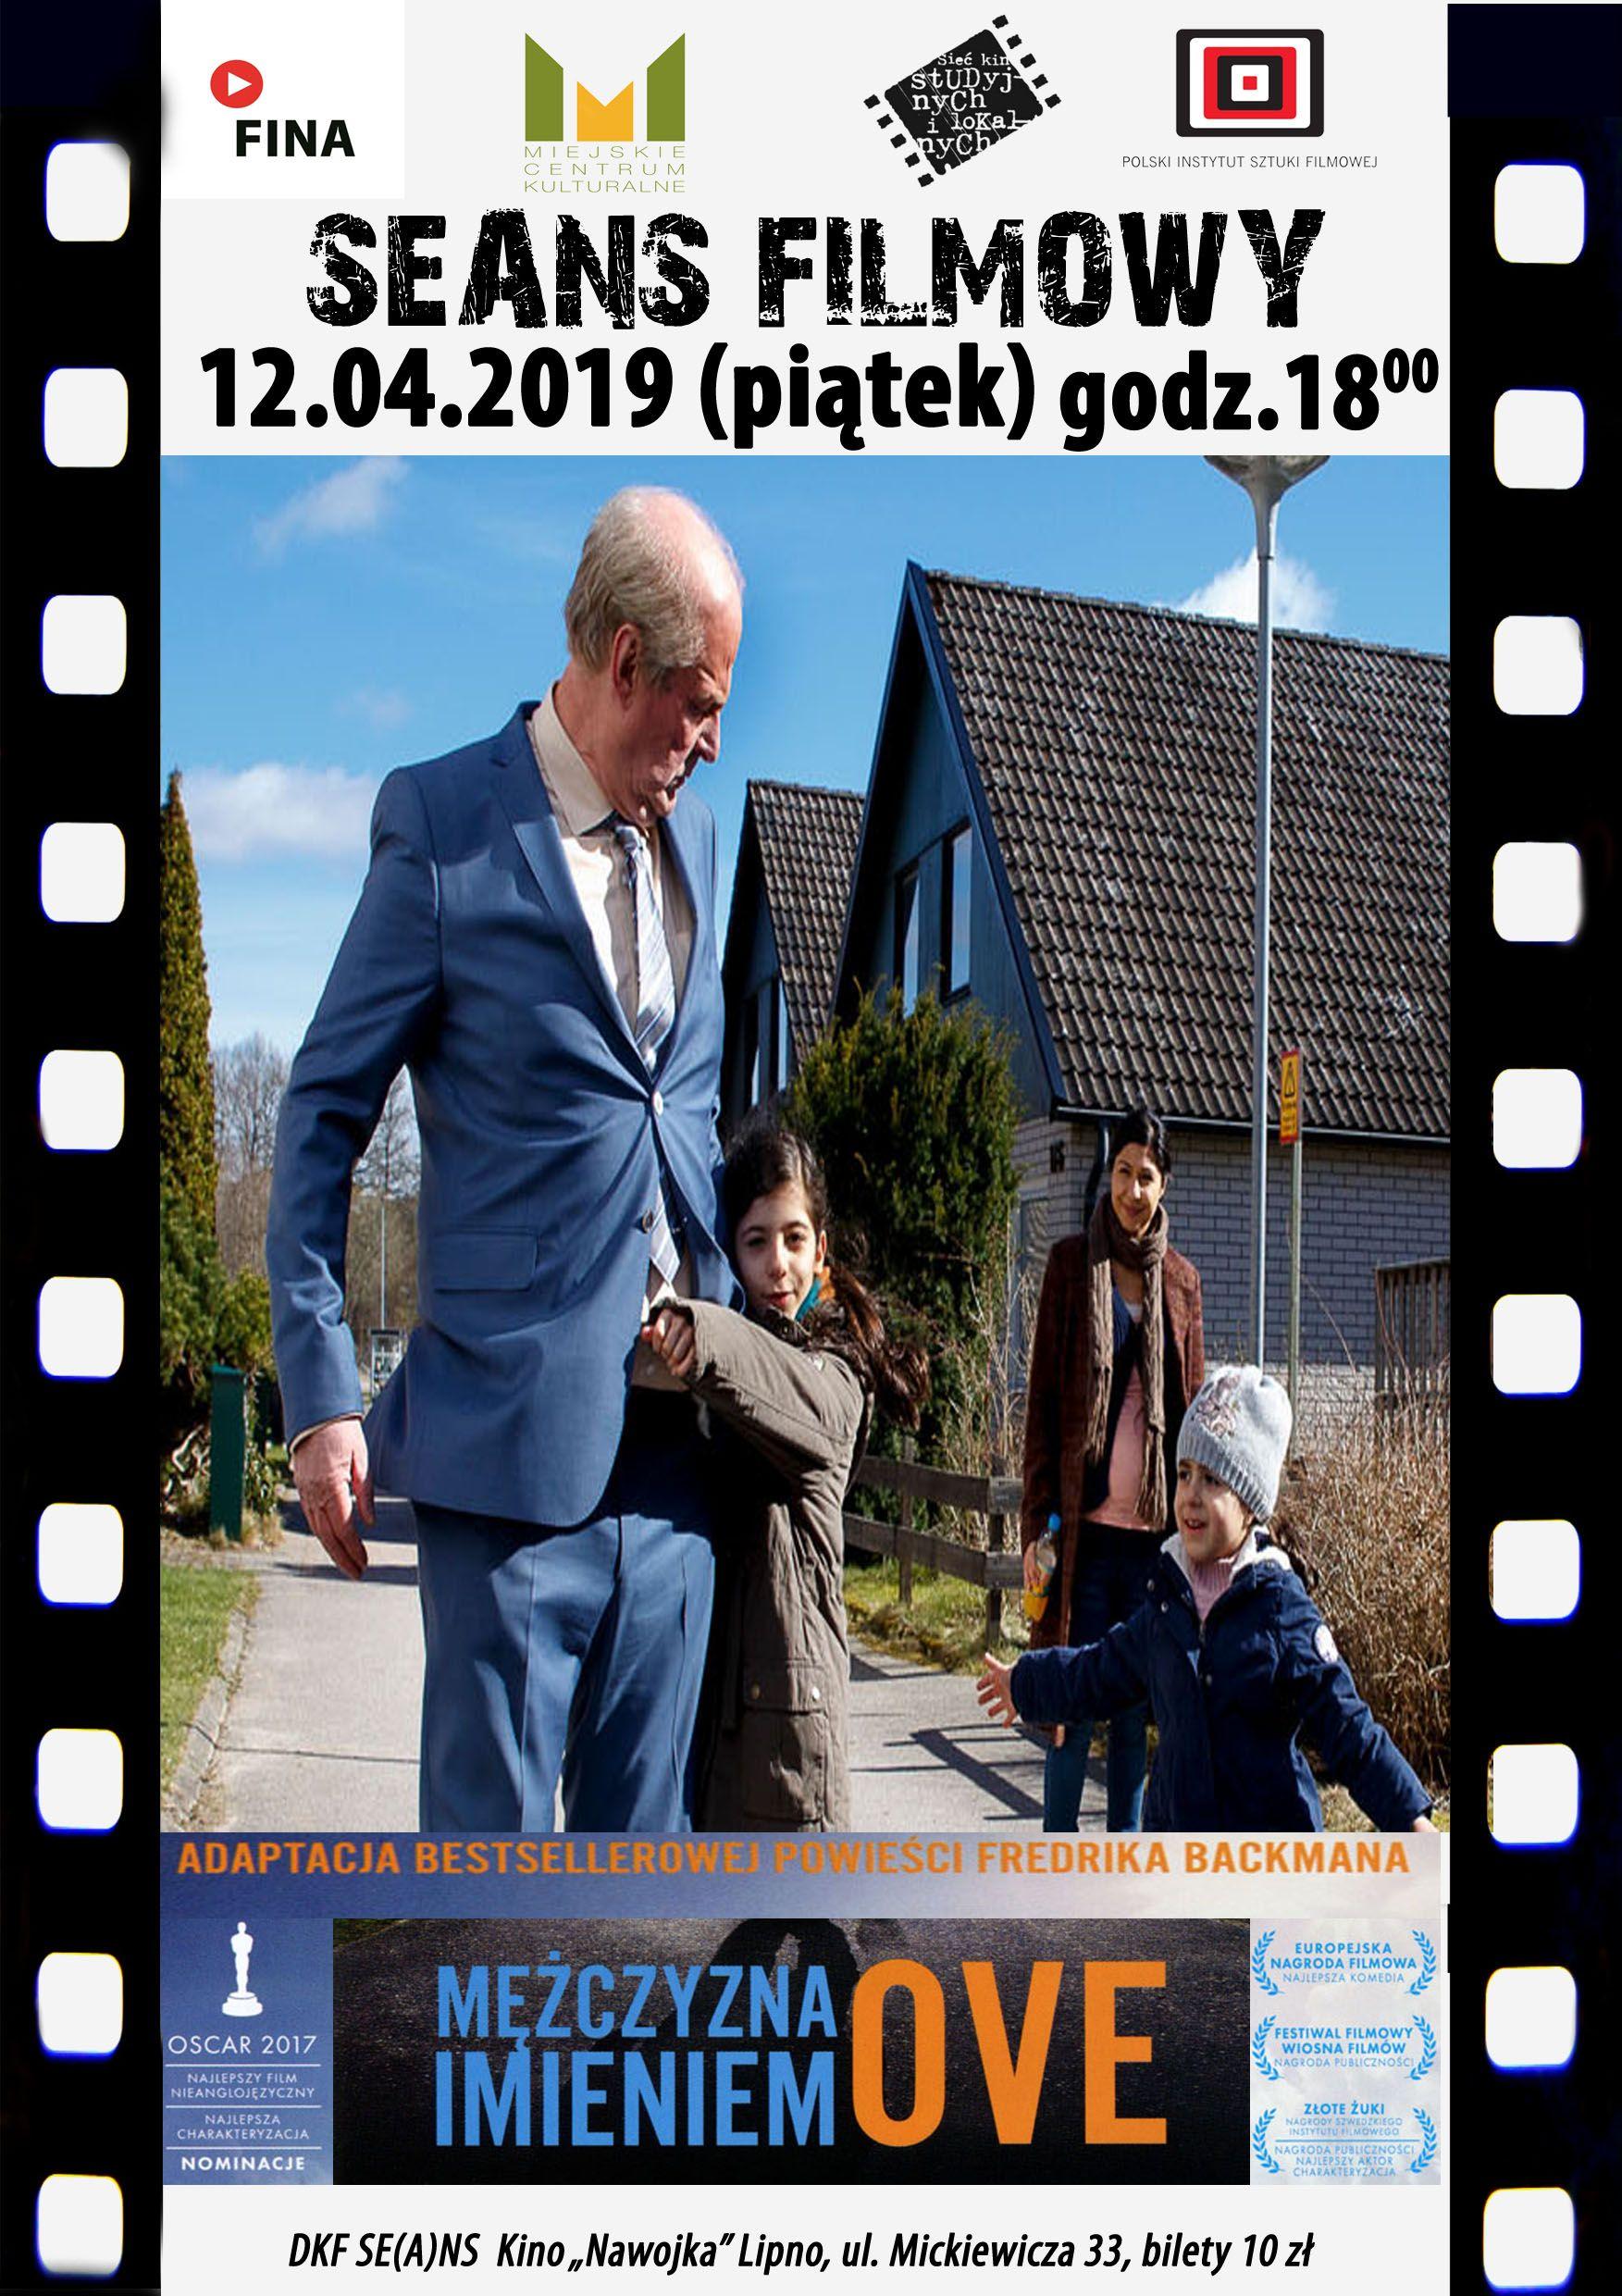 DKF ZAPRASZA w piątek 12.04.2019 r. o godz. 18 na szwedzki komediodramat o miłości, stracie i nadziei mimo wszystko.